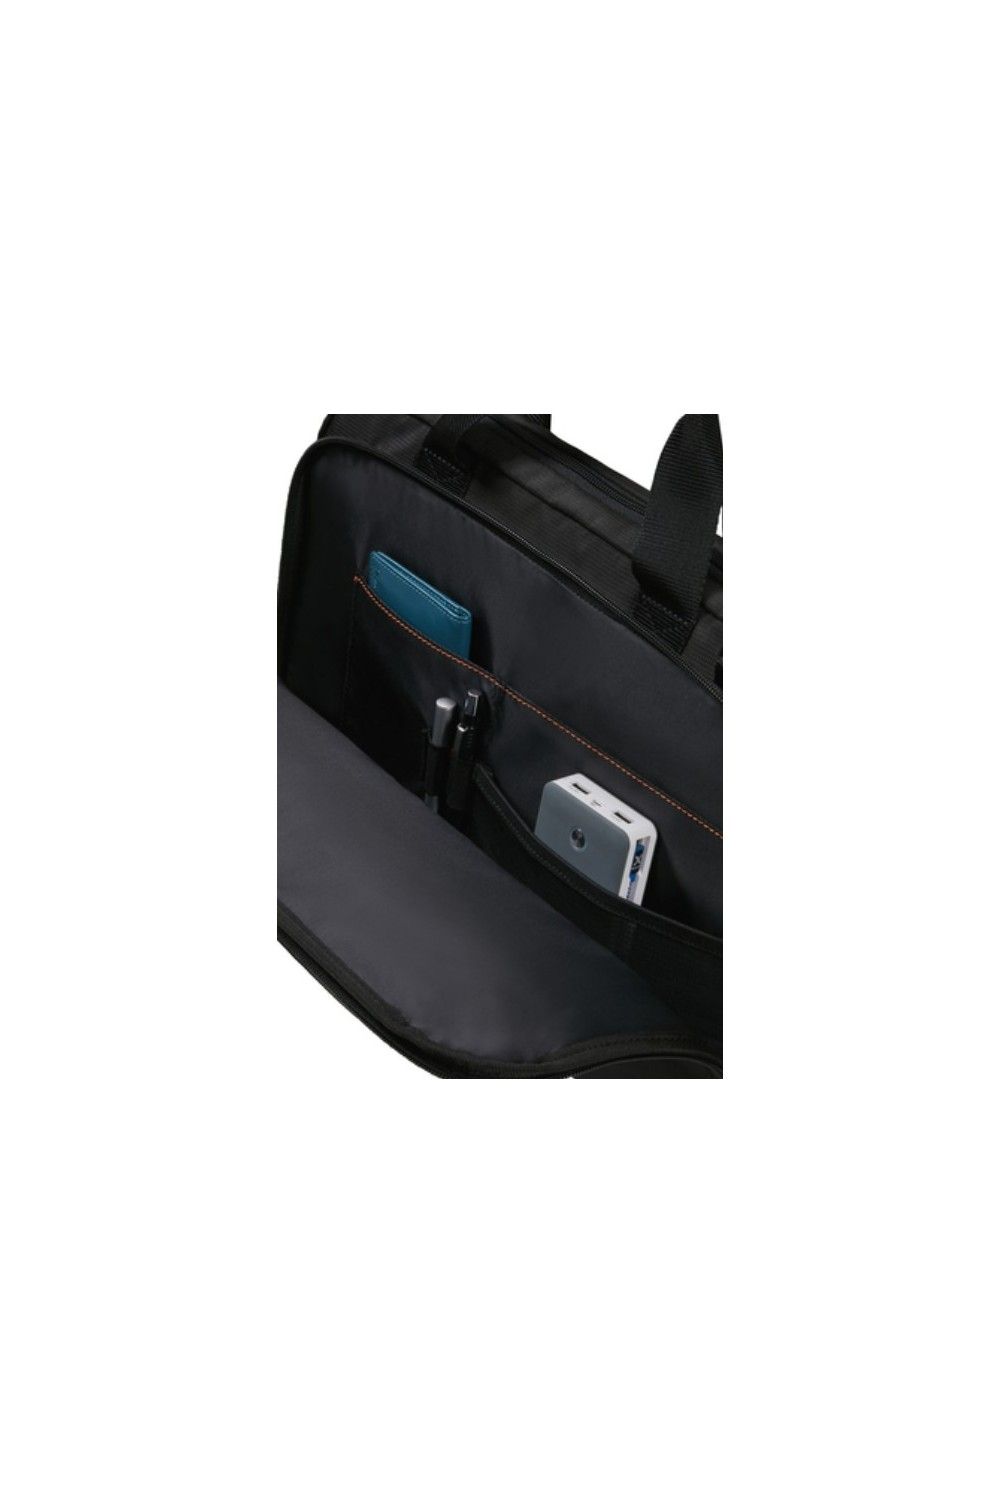 Samsonite sac d'ordinateur portable Network 4 14 pouces black